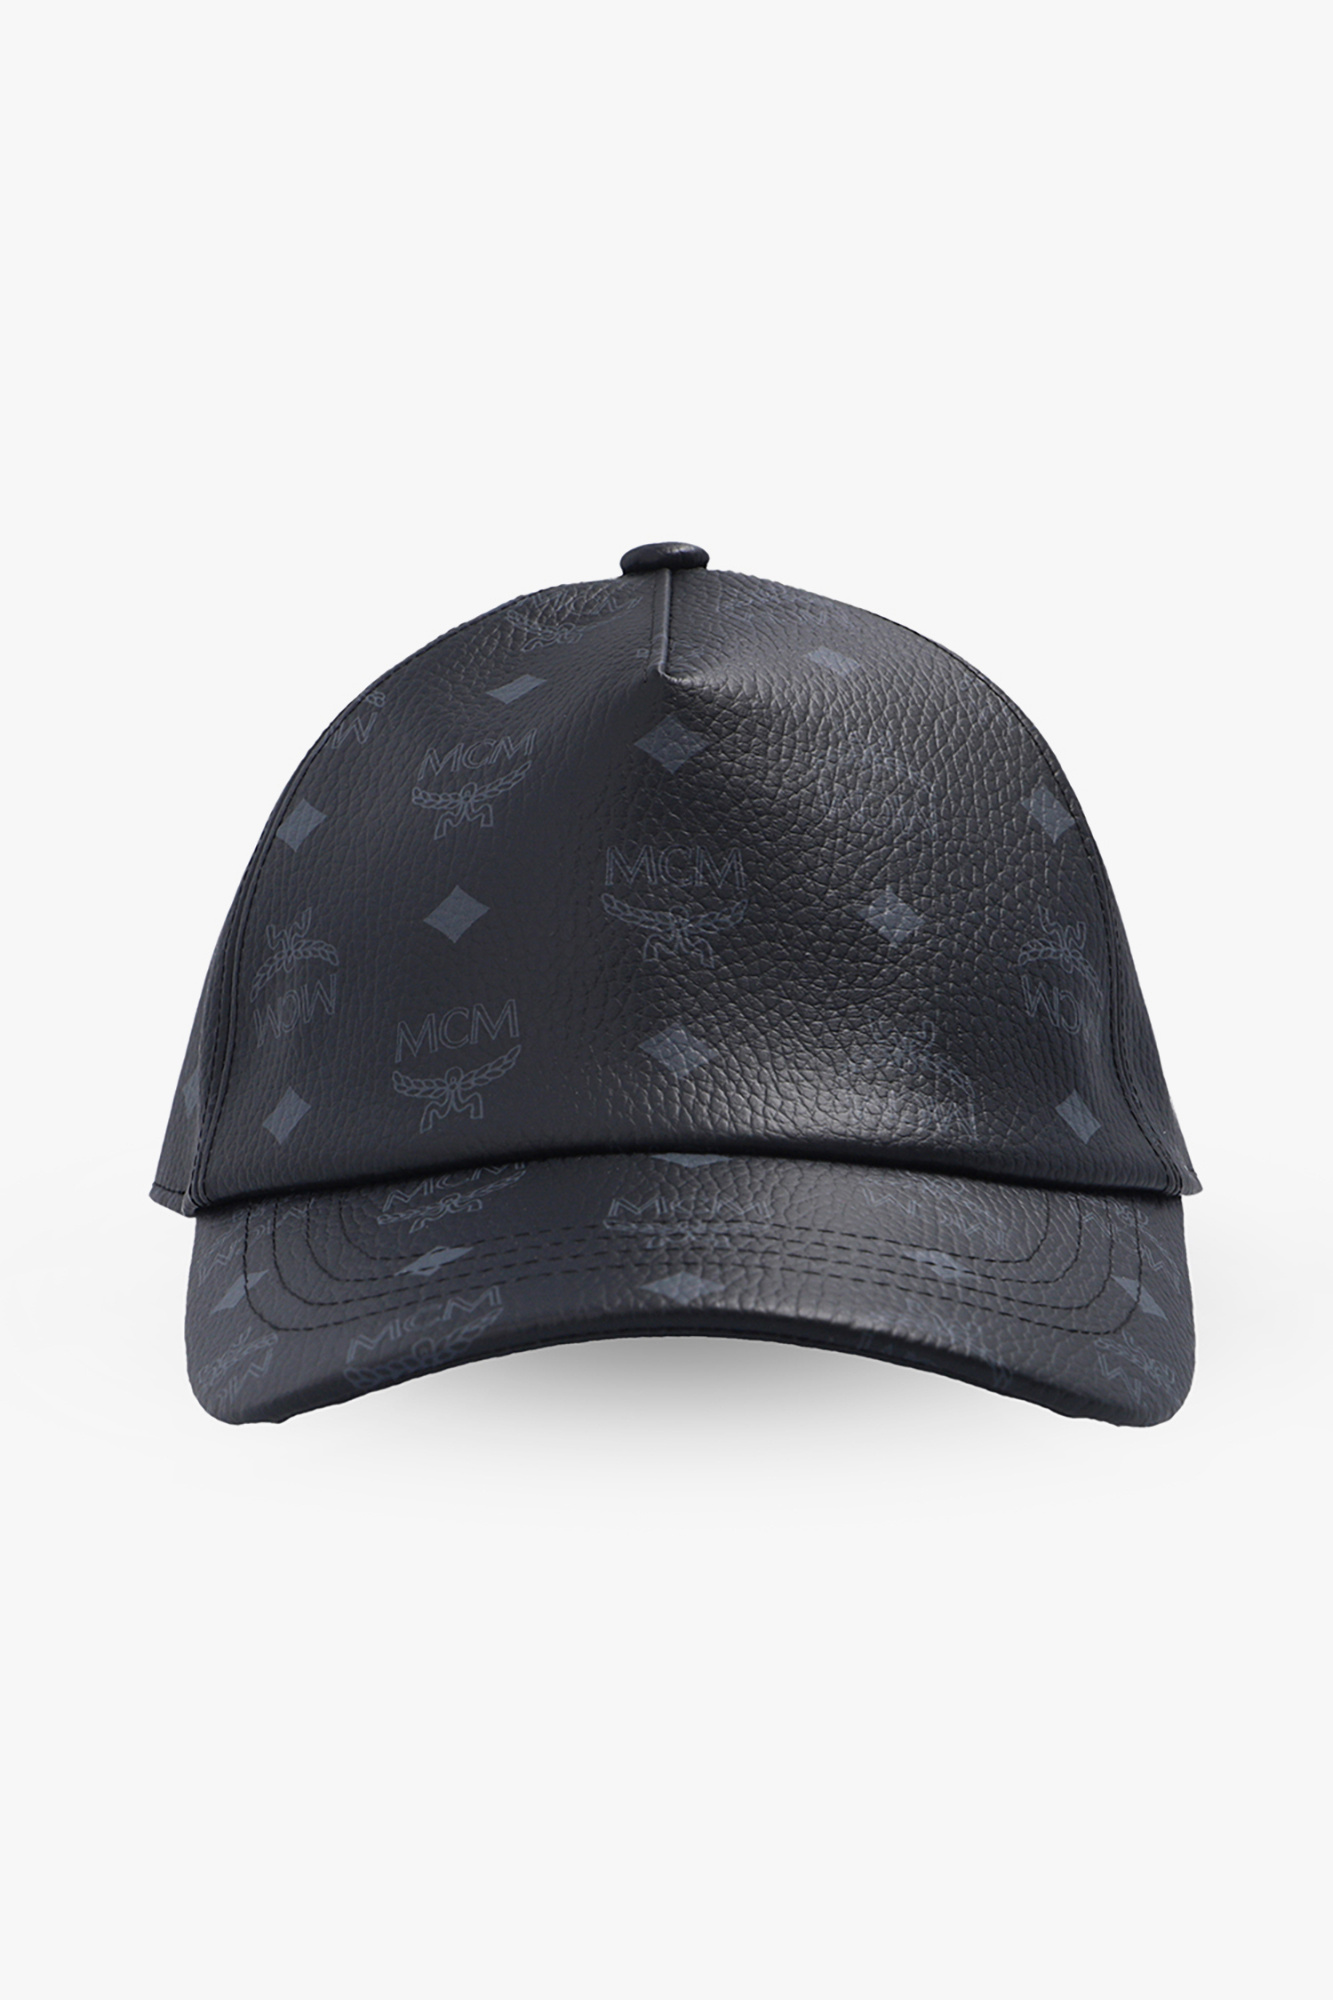 ellesse ellesse cap Black - baseball Spain IetpShops MCM - Patterned Club bucket navy lorenzo hat